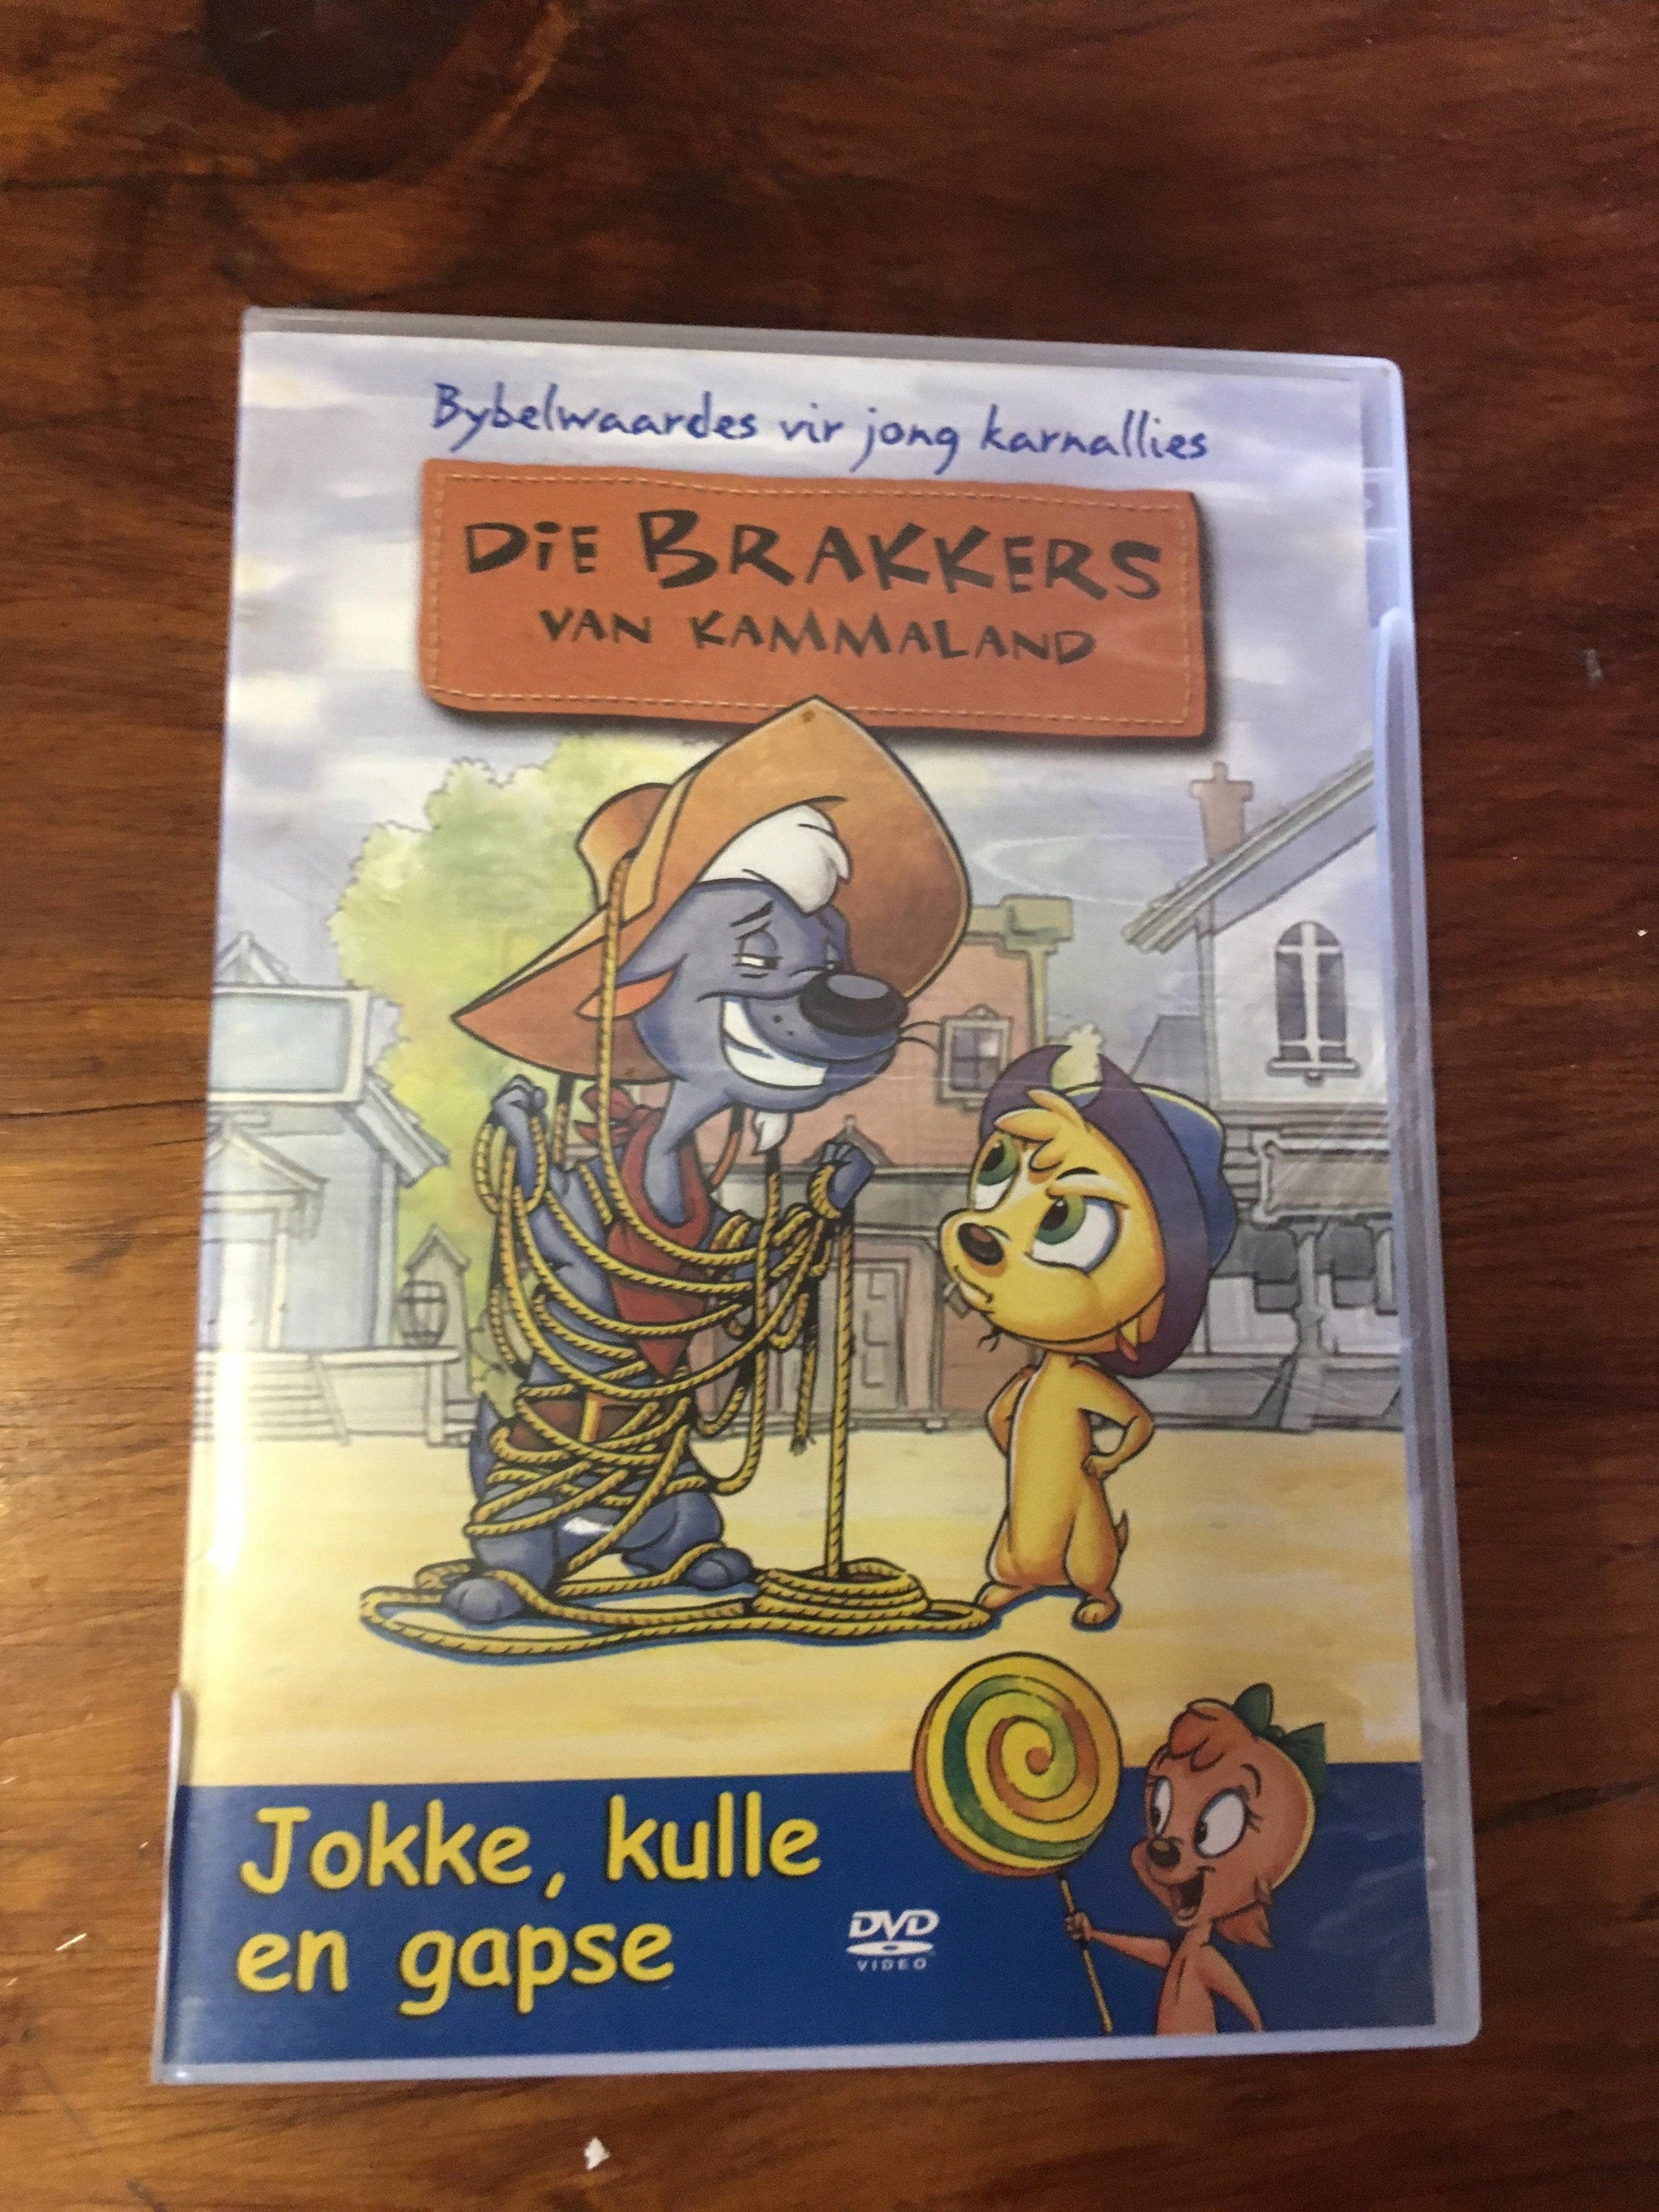 Die Brakkers ( Van Kammaland) - DVD - 2ndhandwarehouse.com